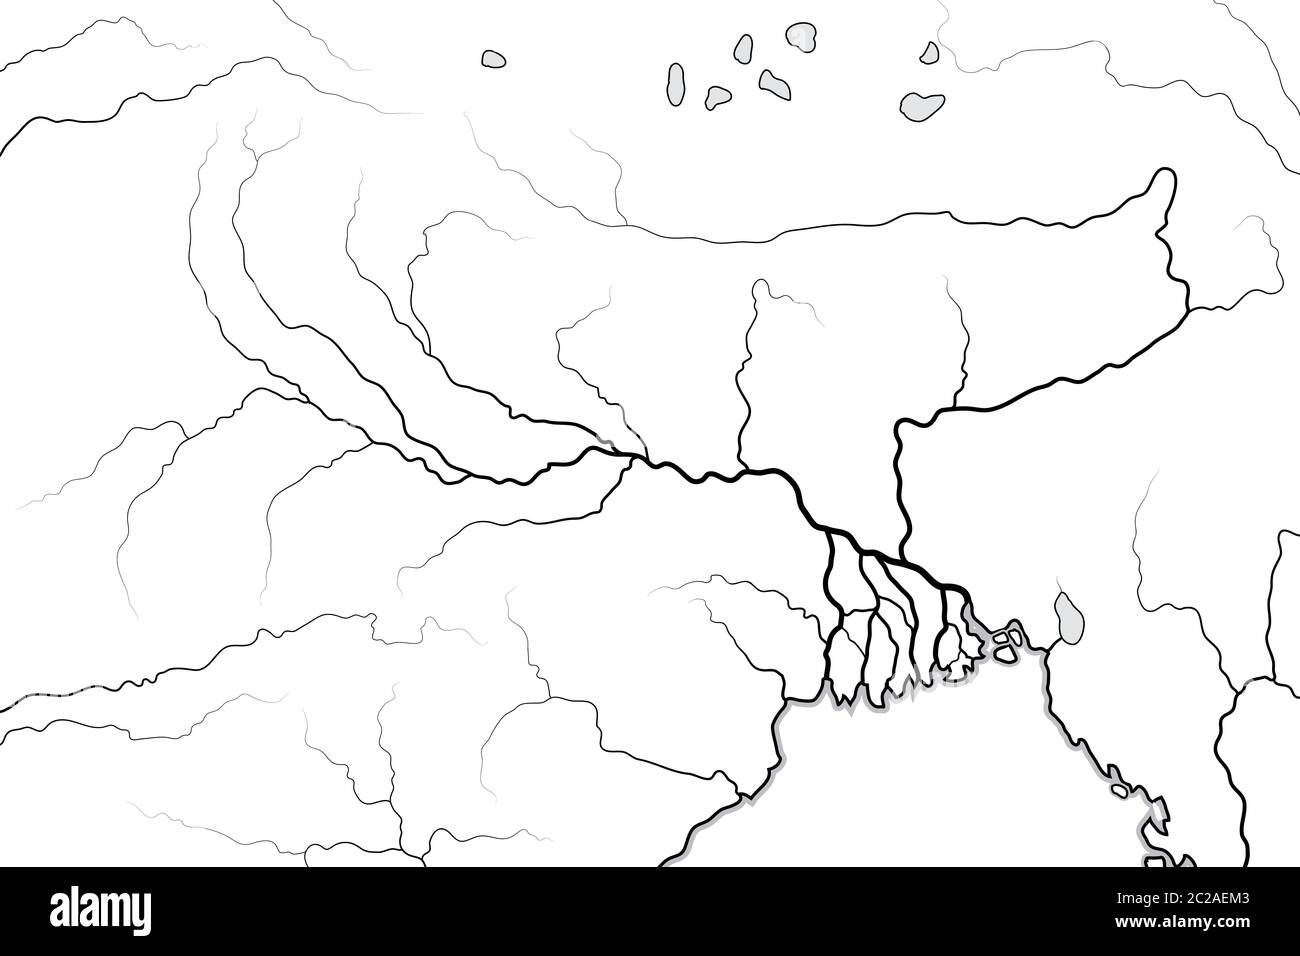 Mapa Mundial del Valle y Delta DEL RÍO GANGES: India, Nepal, Bengala, Bangladesh. Gráfico geográfico. Foto de stock